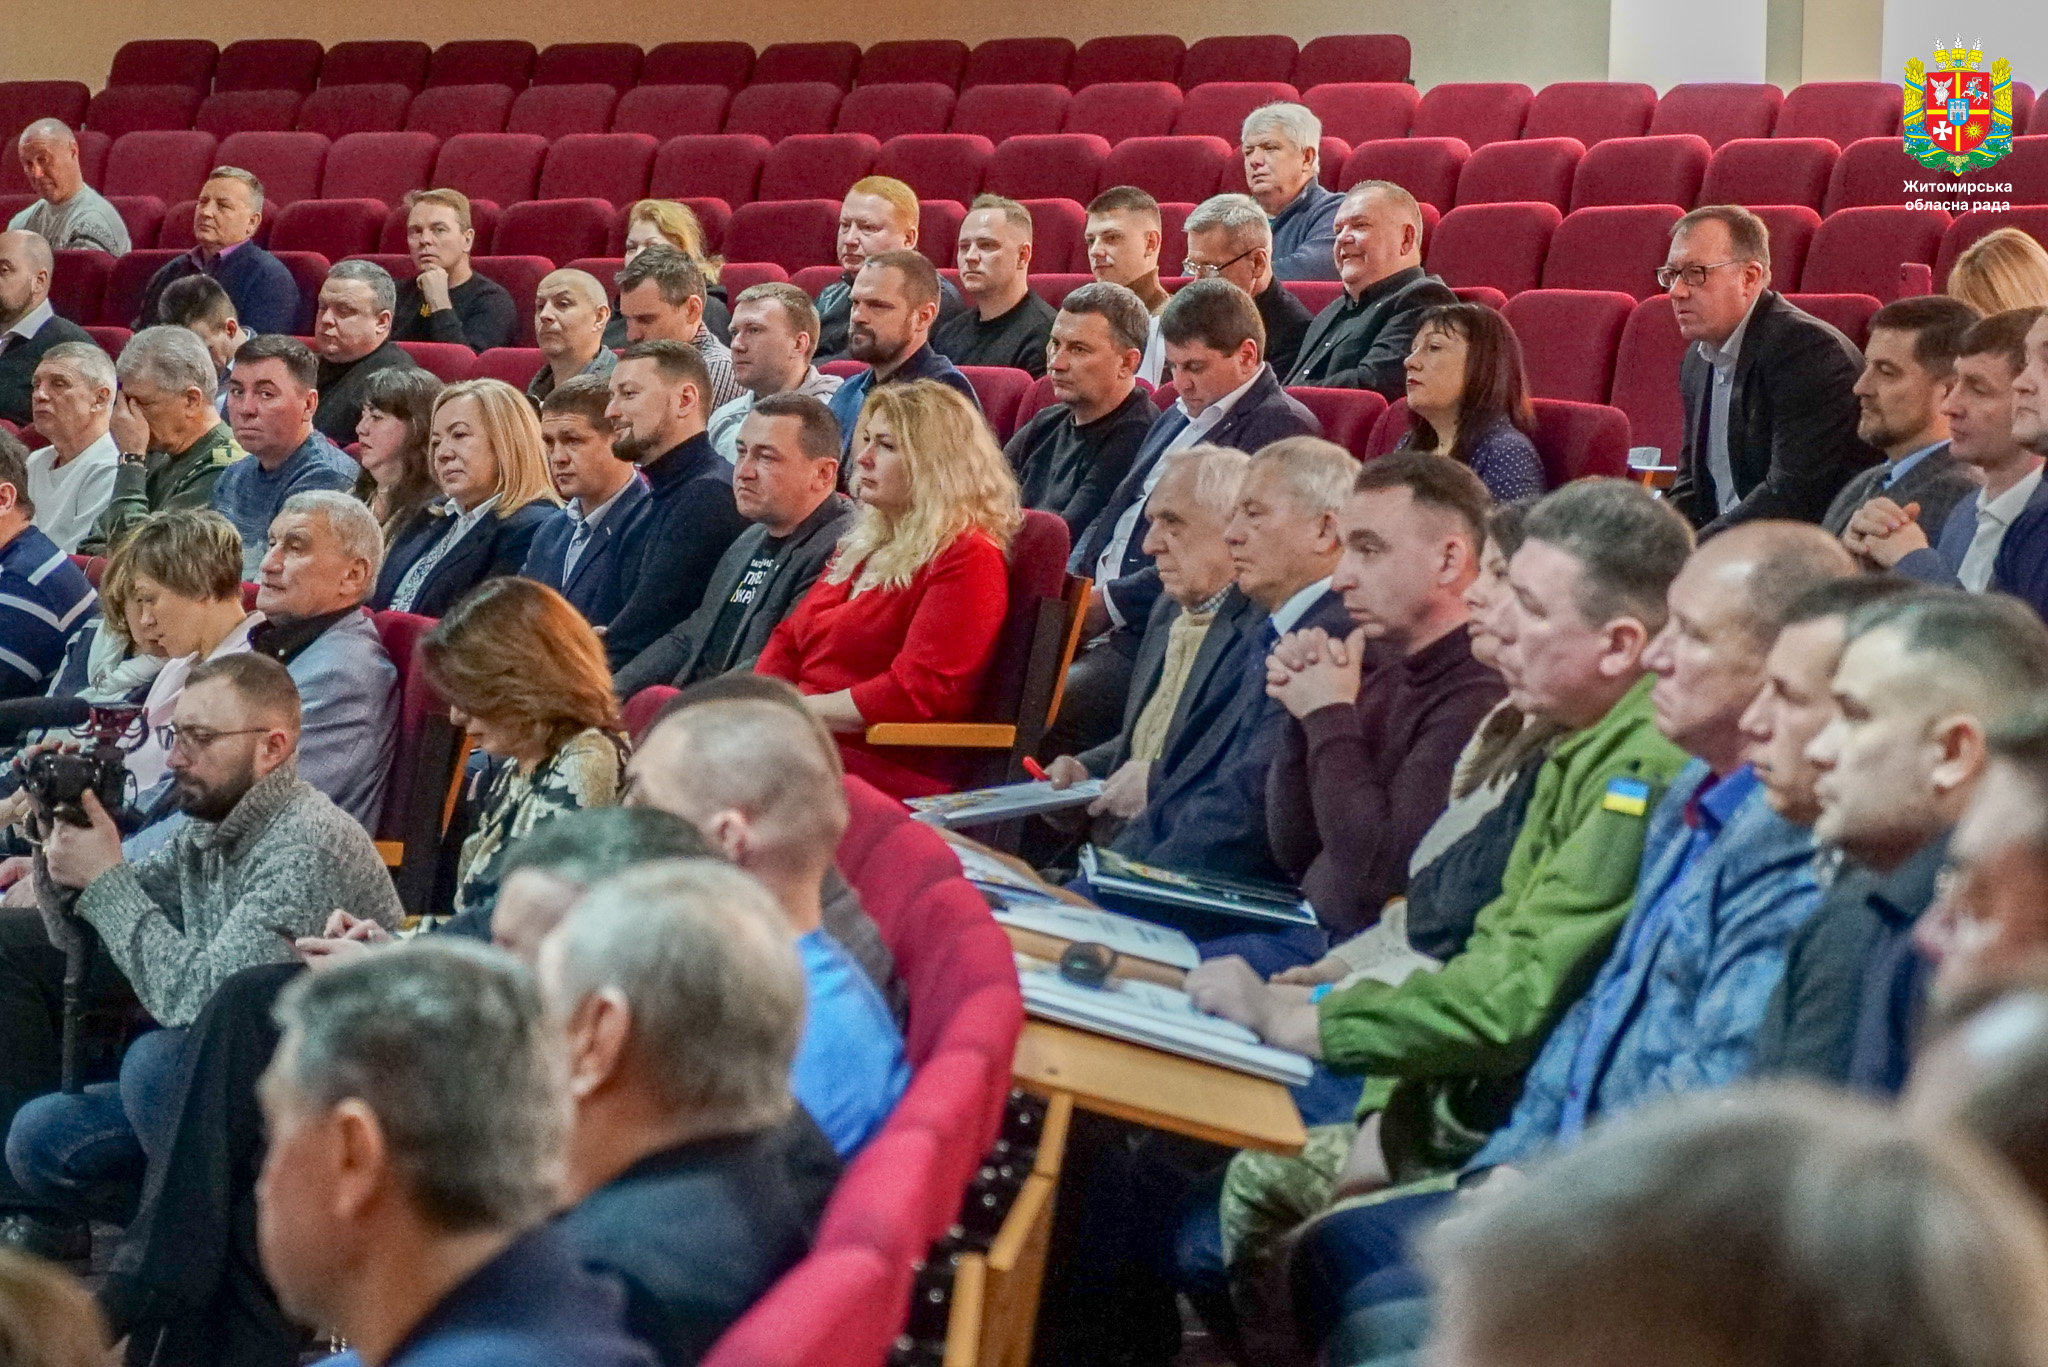 У Житомирі відбулася звітно-виборна асамблея ГО «Відділення НОК України в Житомирській області»